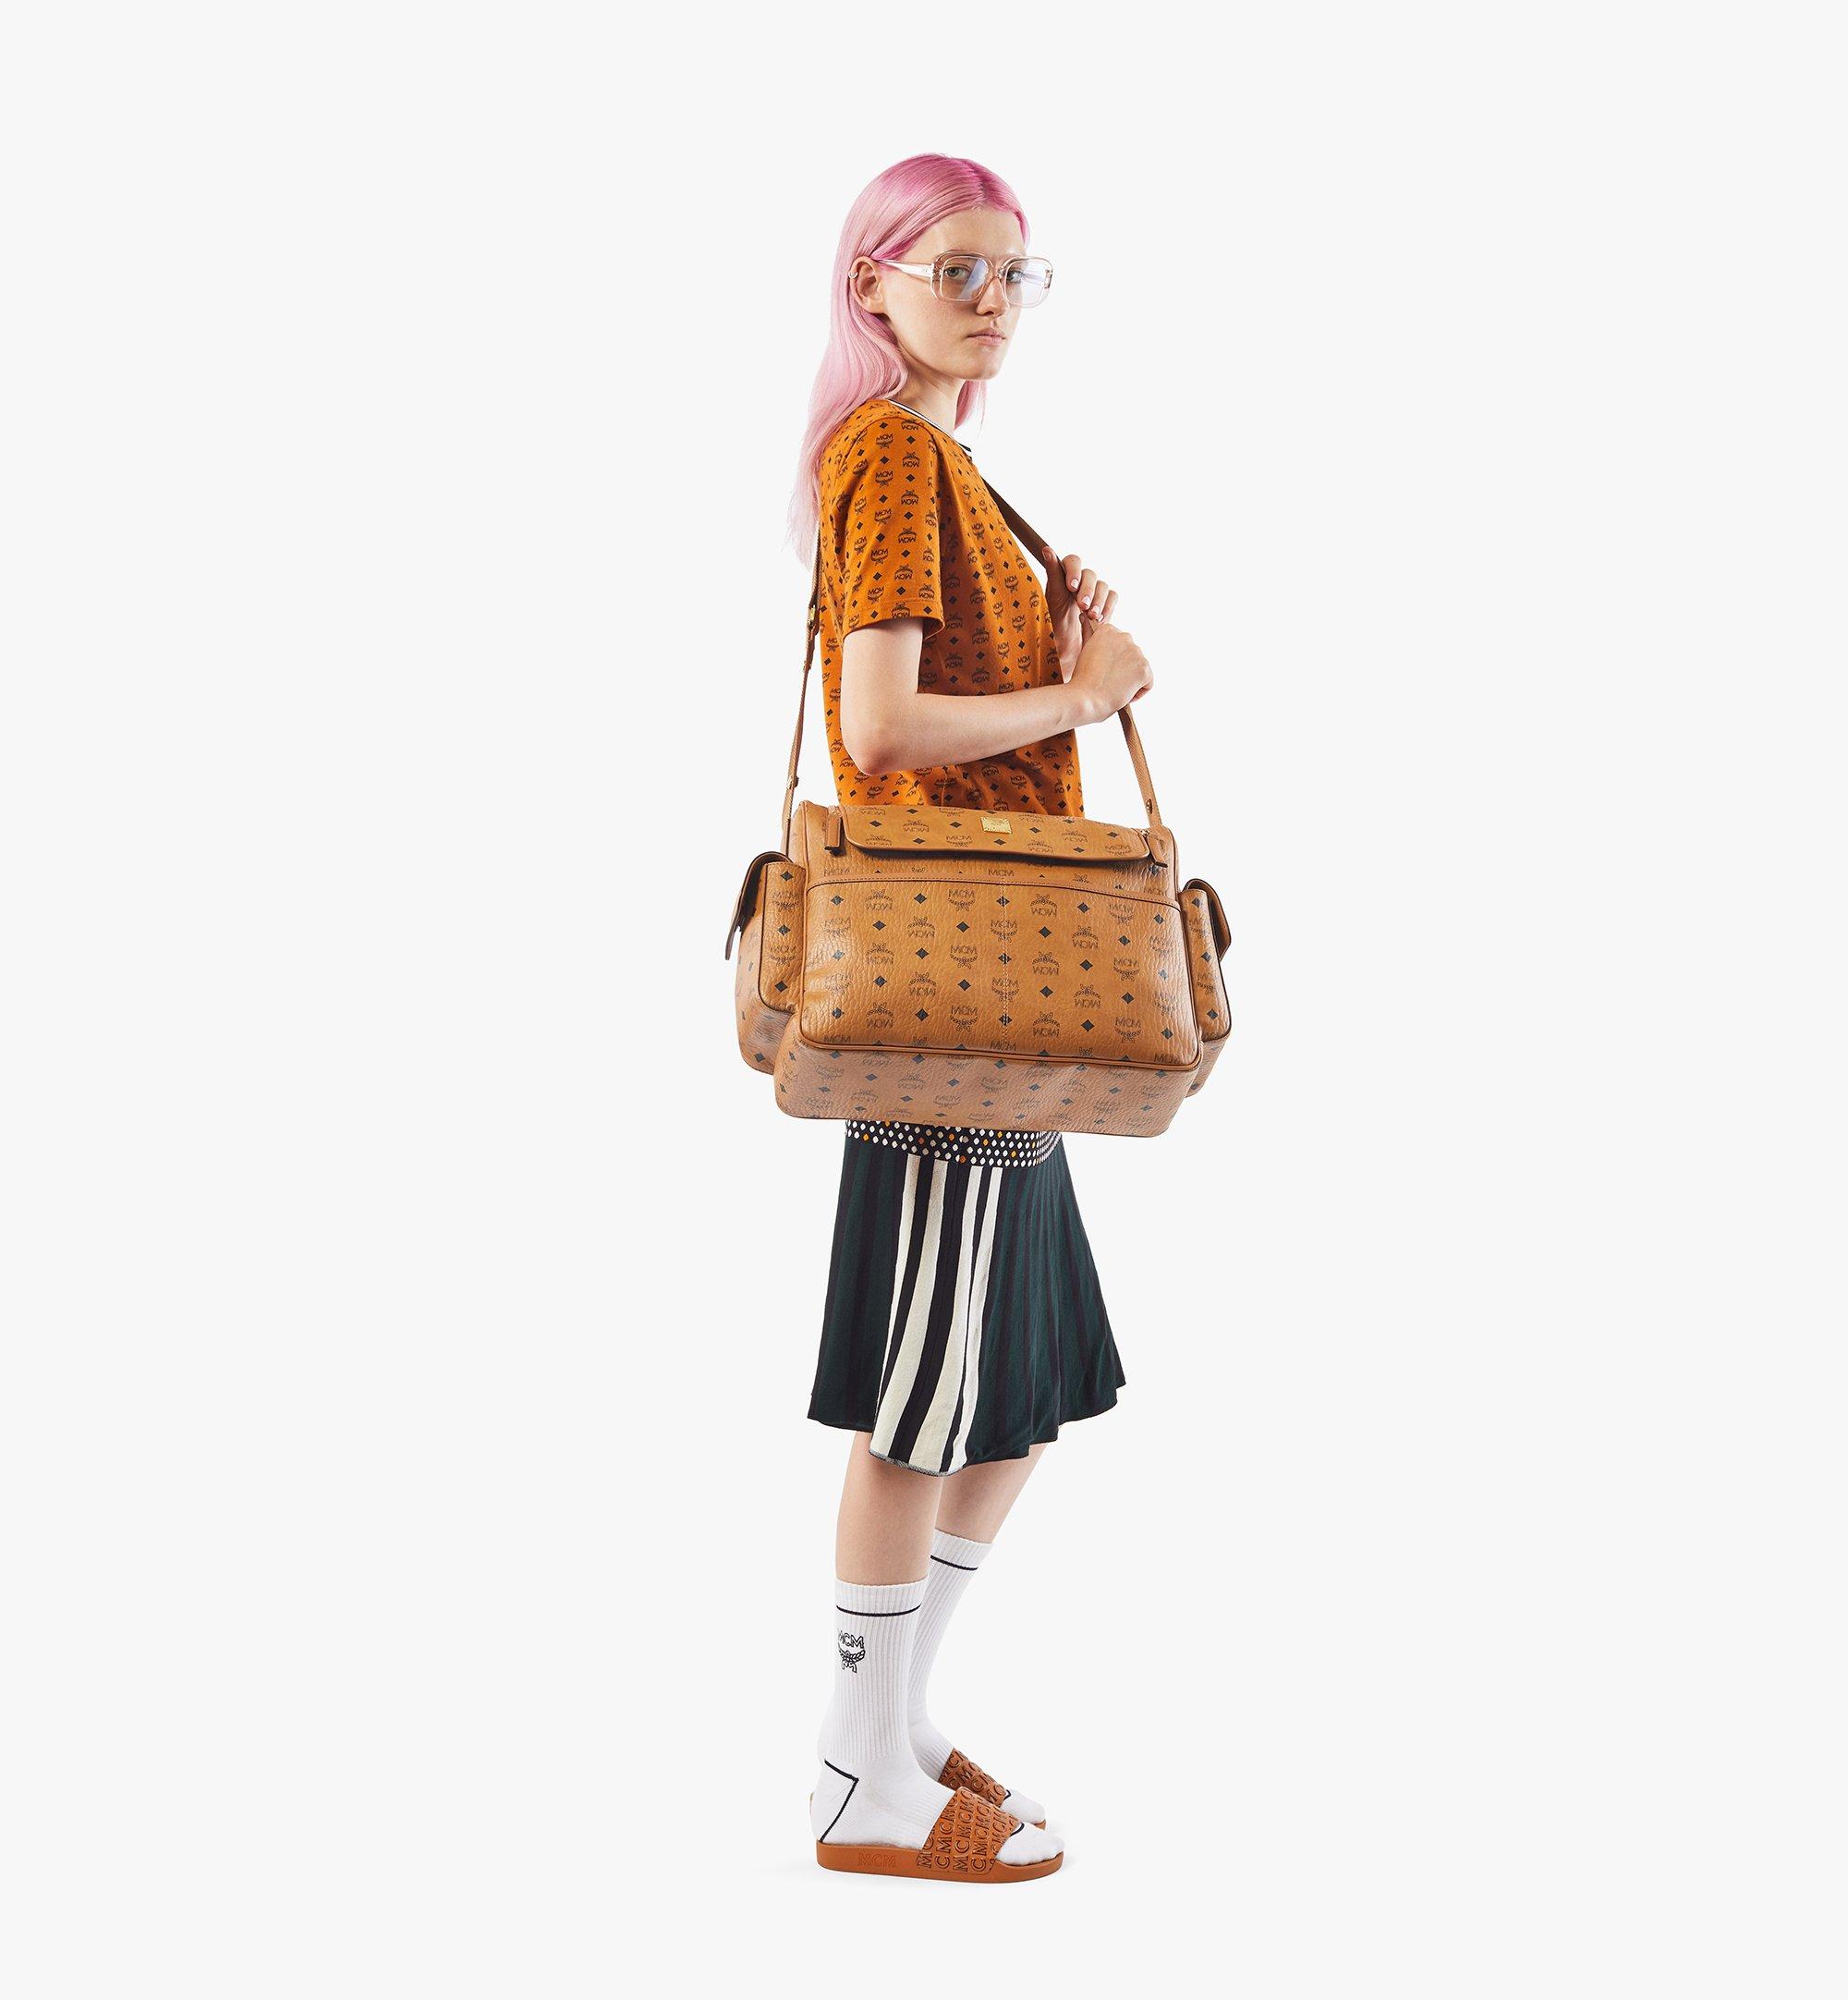 Handbag Designer By Mcm Size: Large